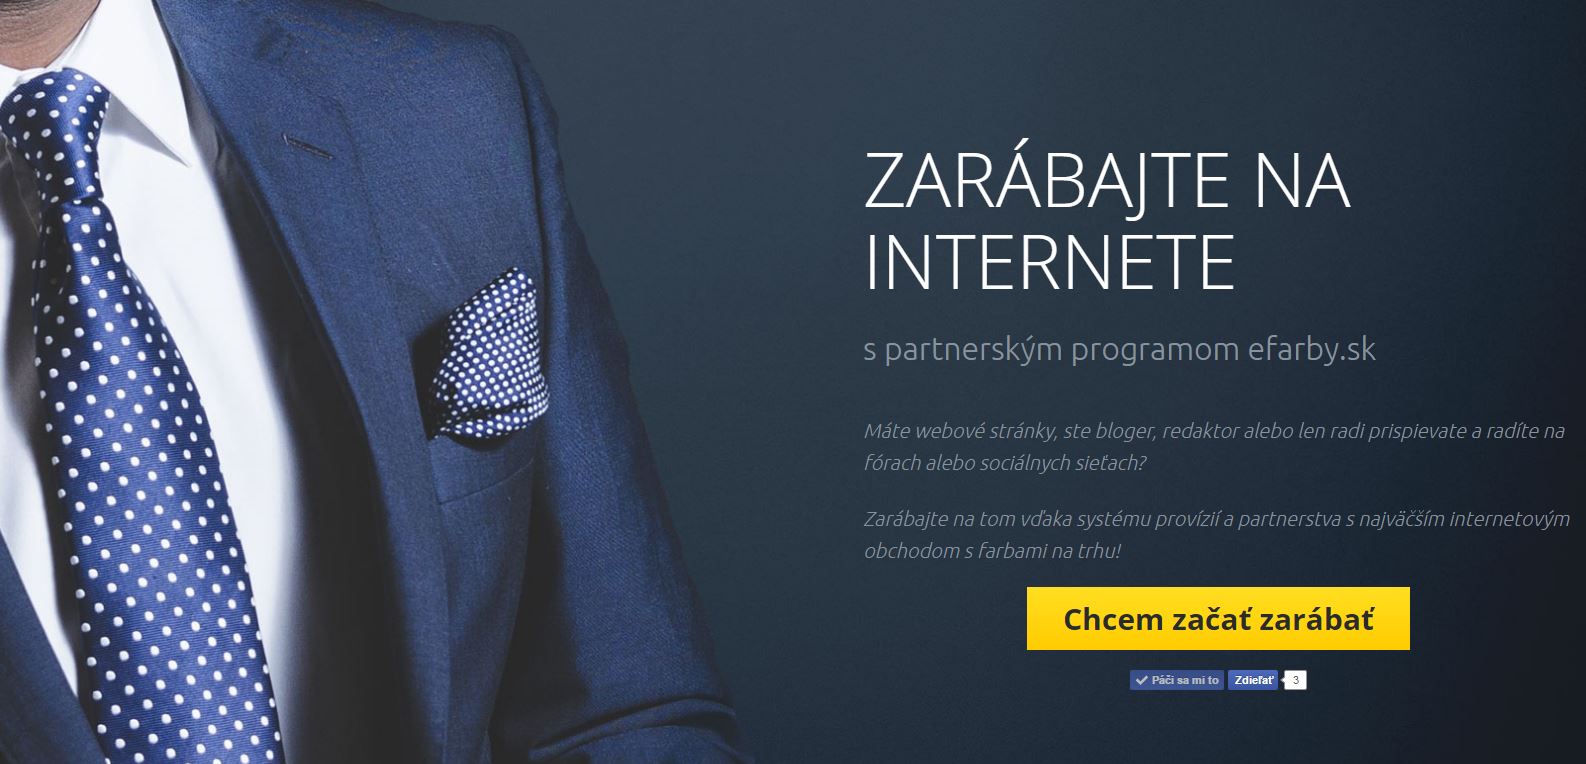 Zarábajte na internete vďaka partnerskému (affiliate) programu od efarby.sk